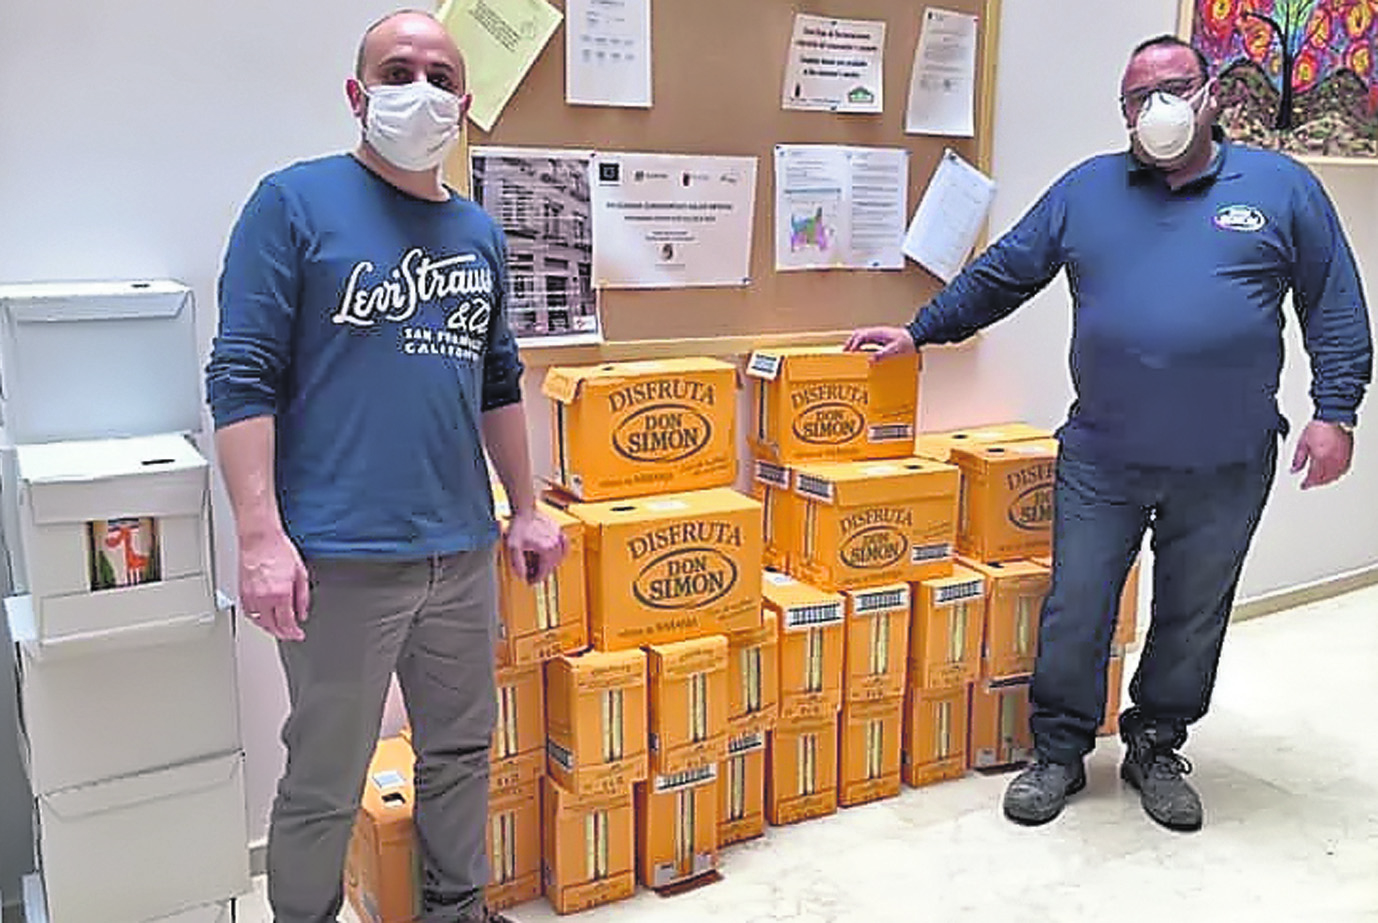 La empresa J. García Carrión dona 1.000 litros de zumo para los más necesitados